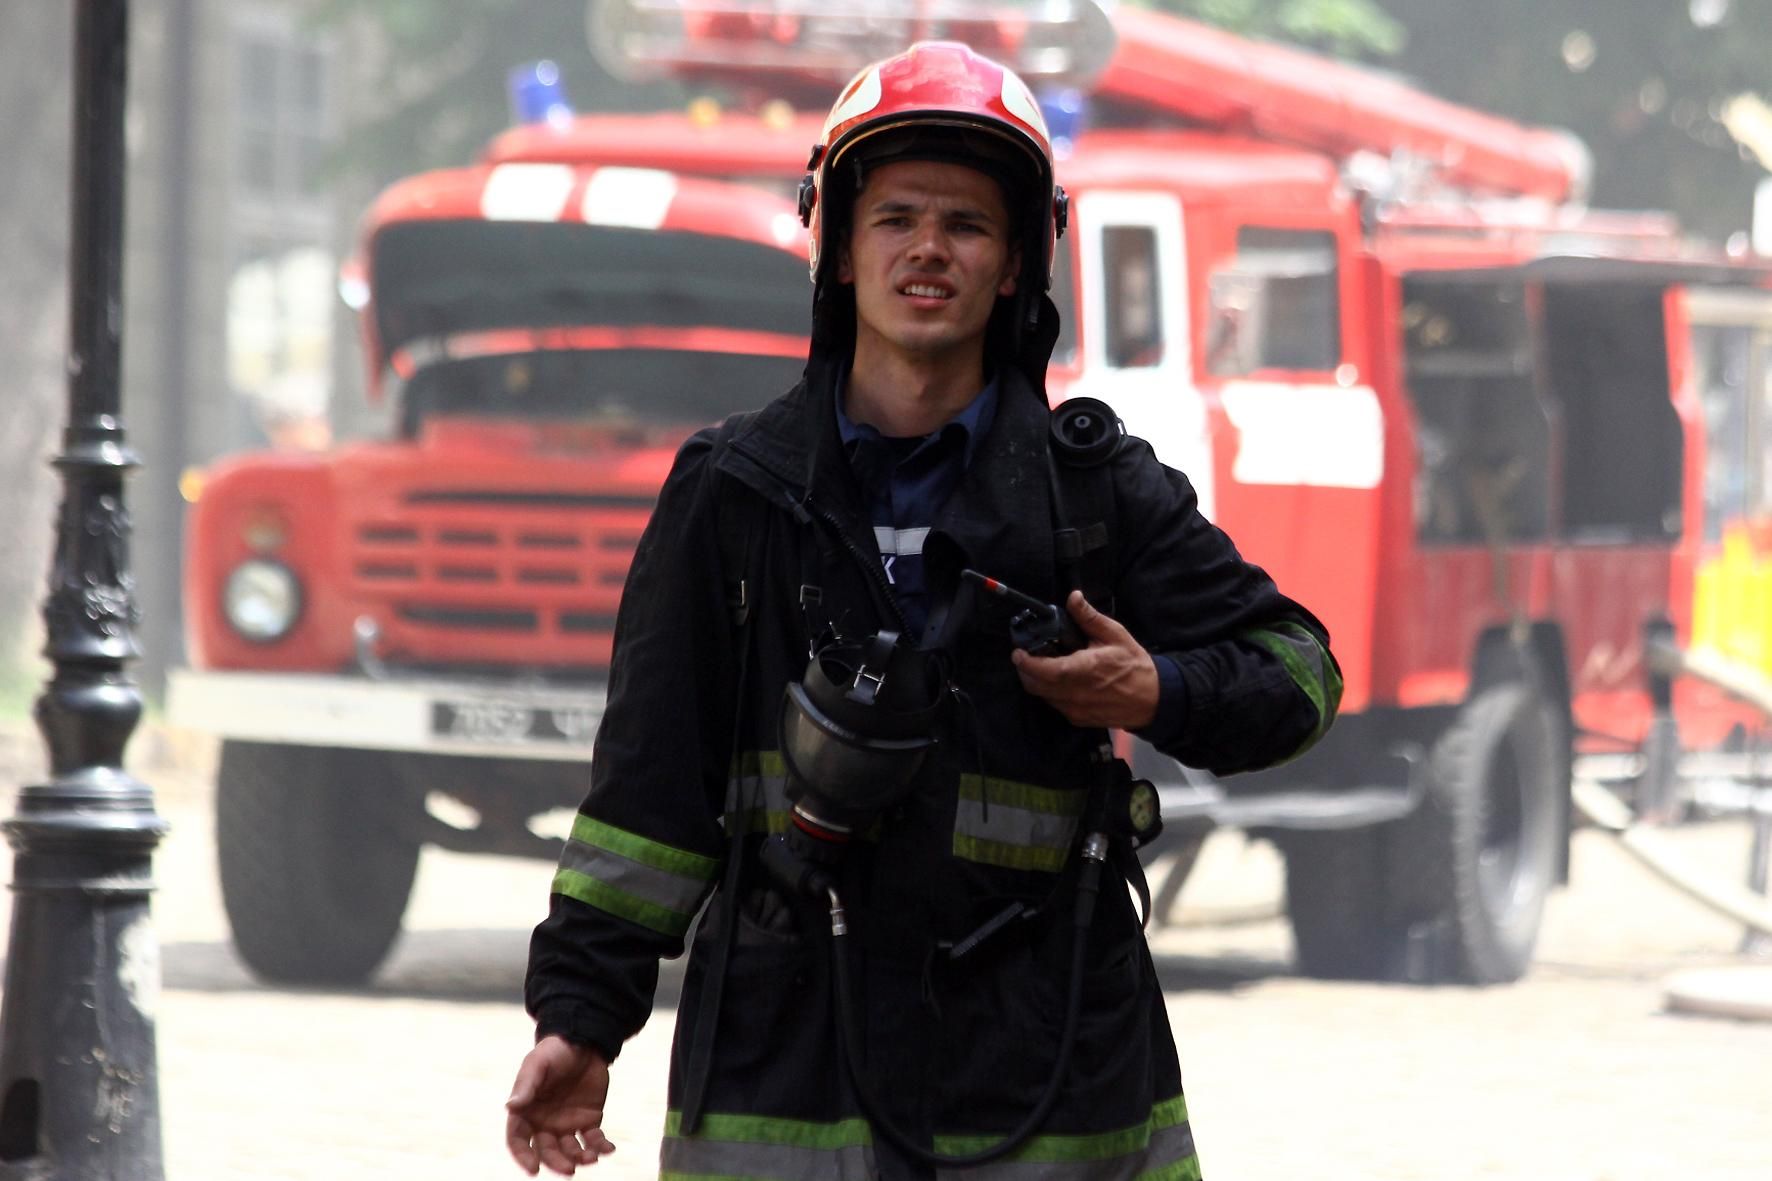 В центре Киева вспыхнул пожар